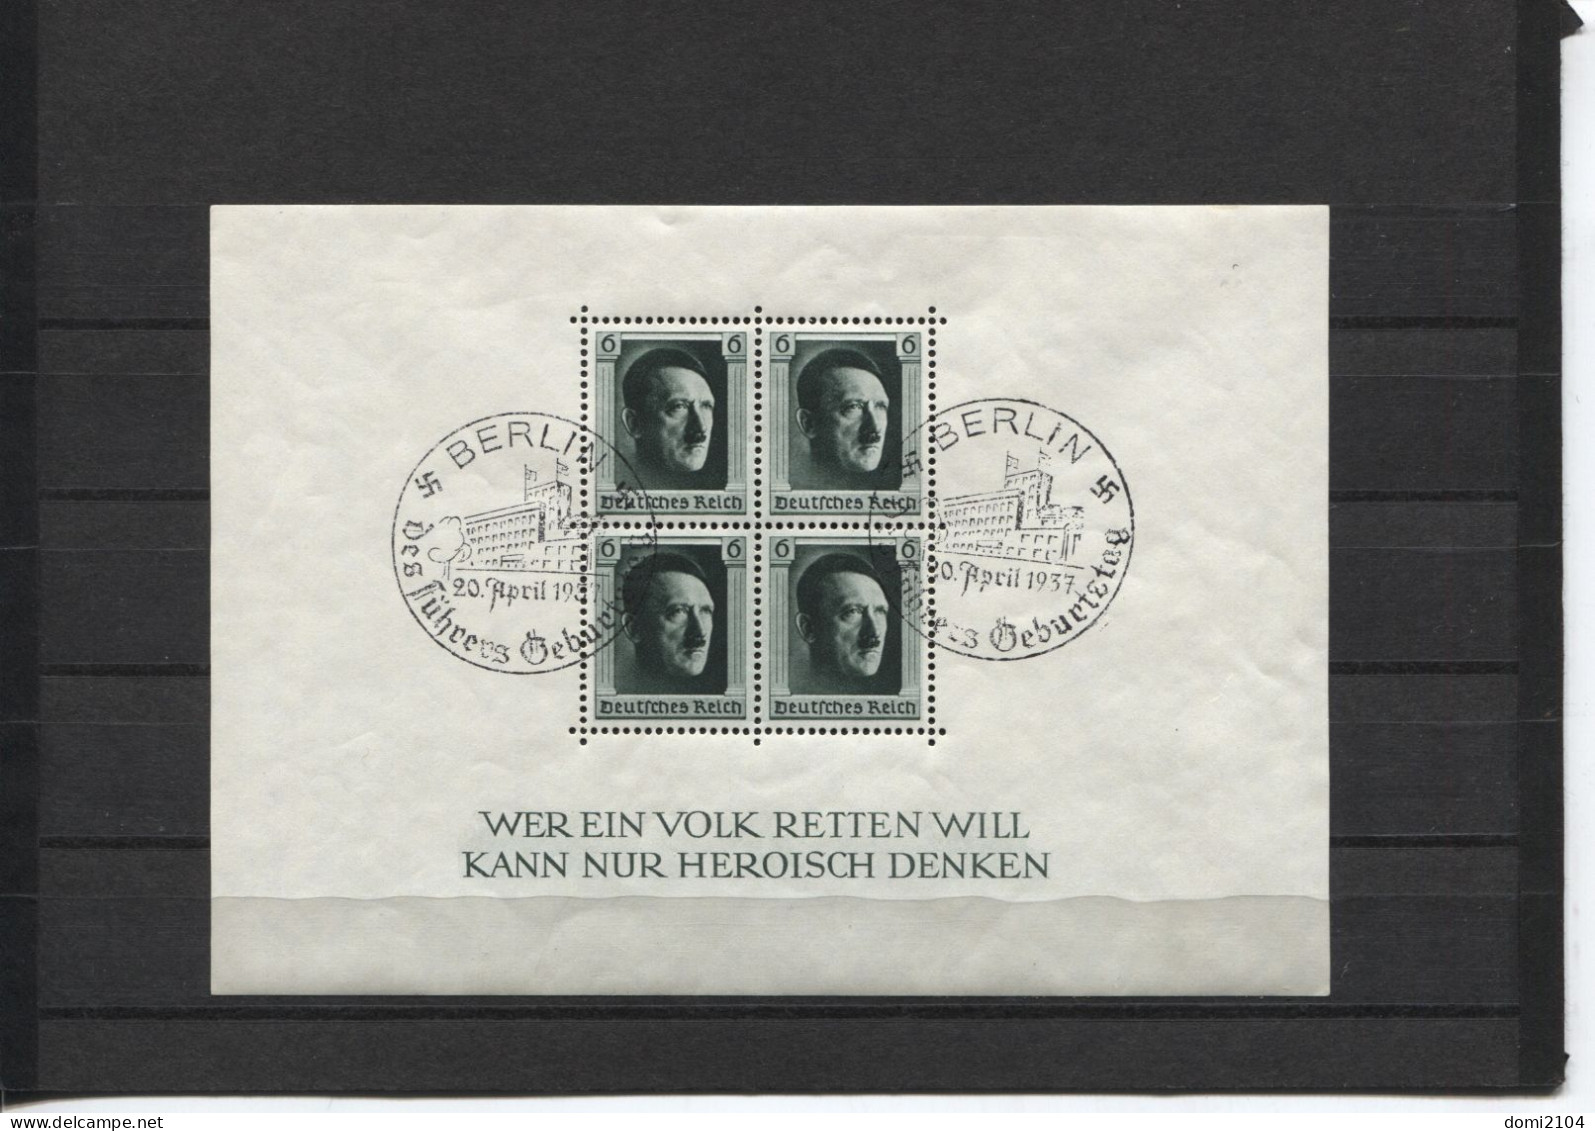 Deutsches Reich Block 7 Sonderstempel Berlin 20.4.37 Geburtstag - Blocks & Sheetlets